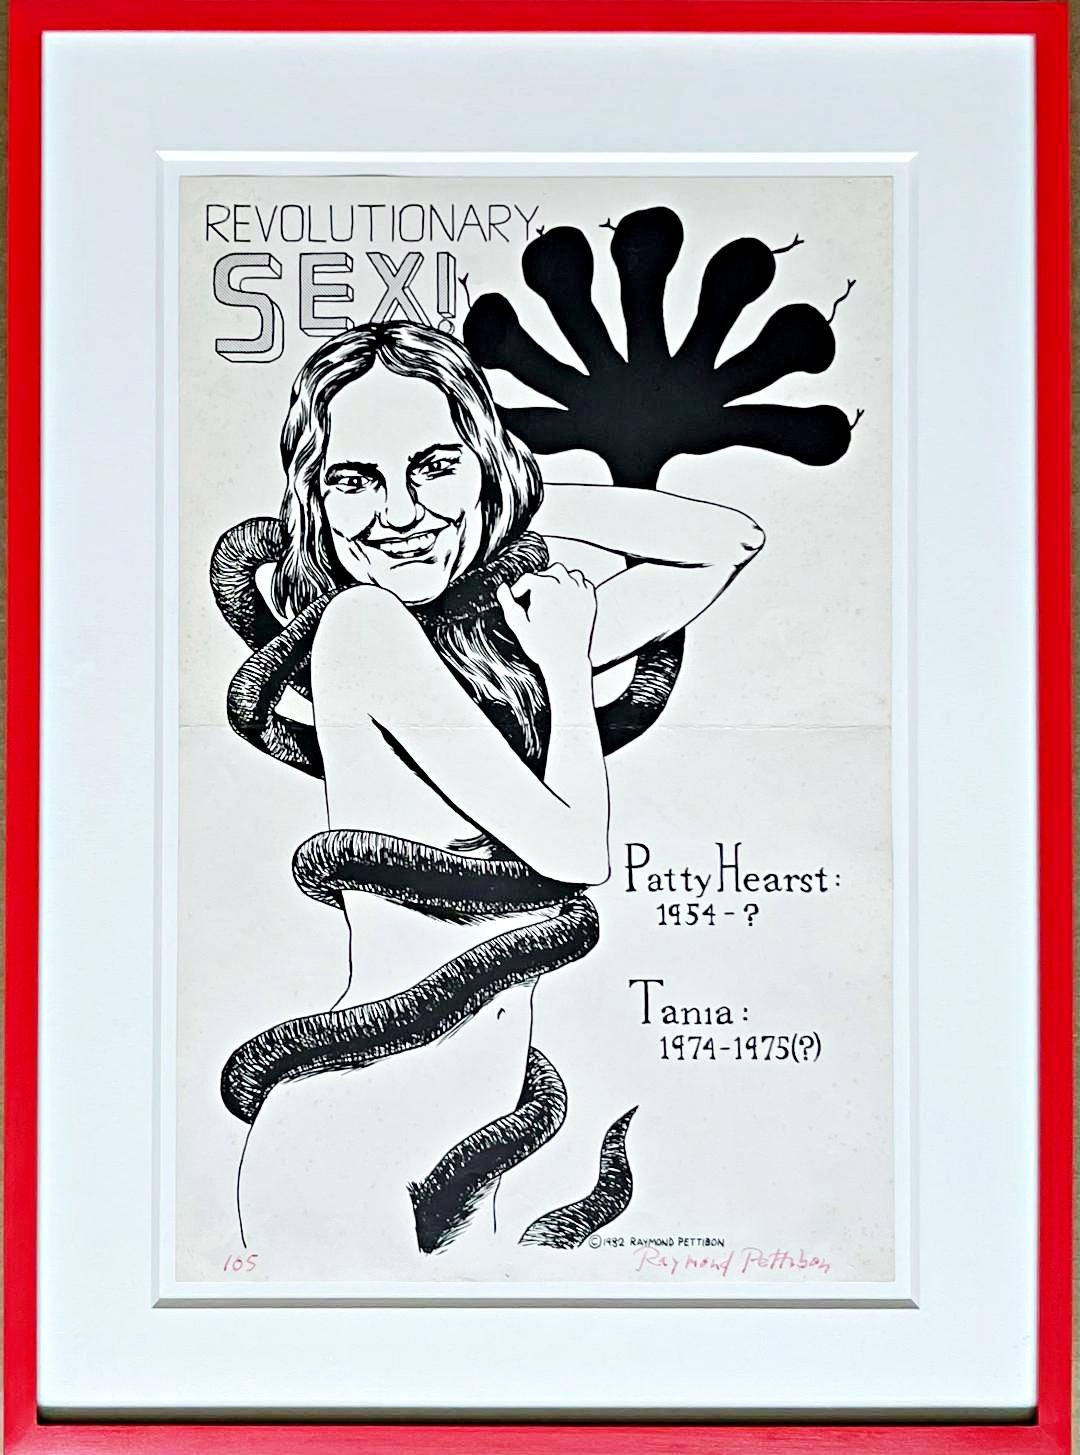 Revolutionärer Sex (Deluxe handsignierte Ausgabe des Patty Hearst SLA-Posters)